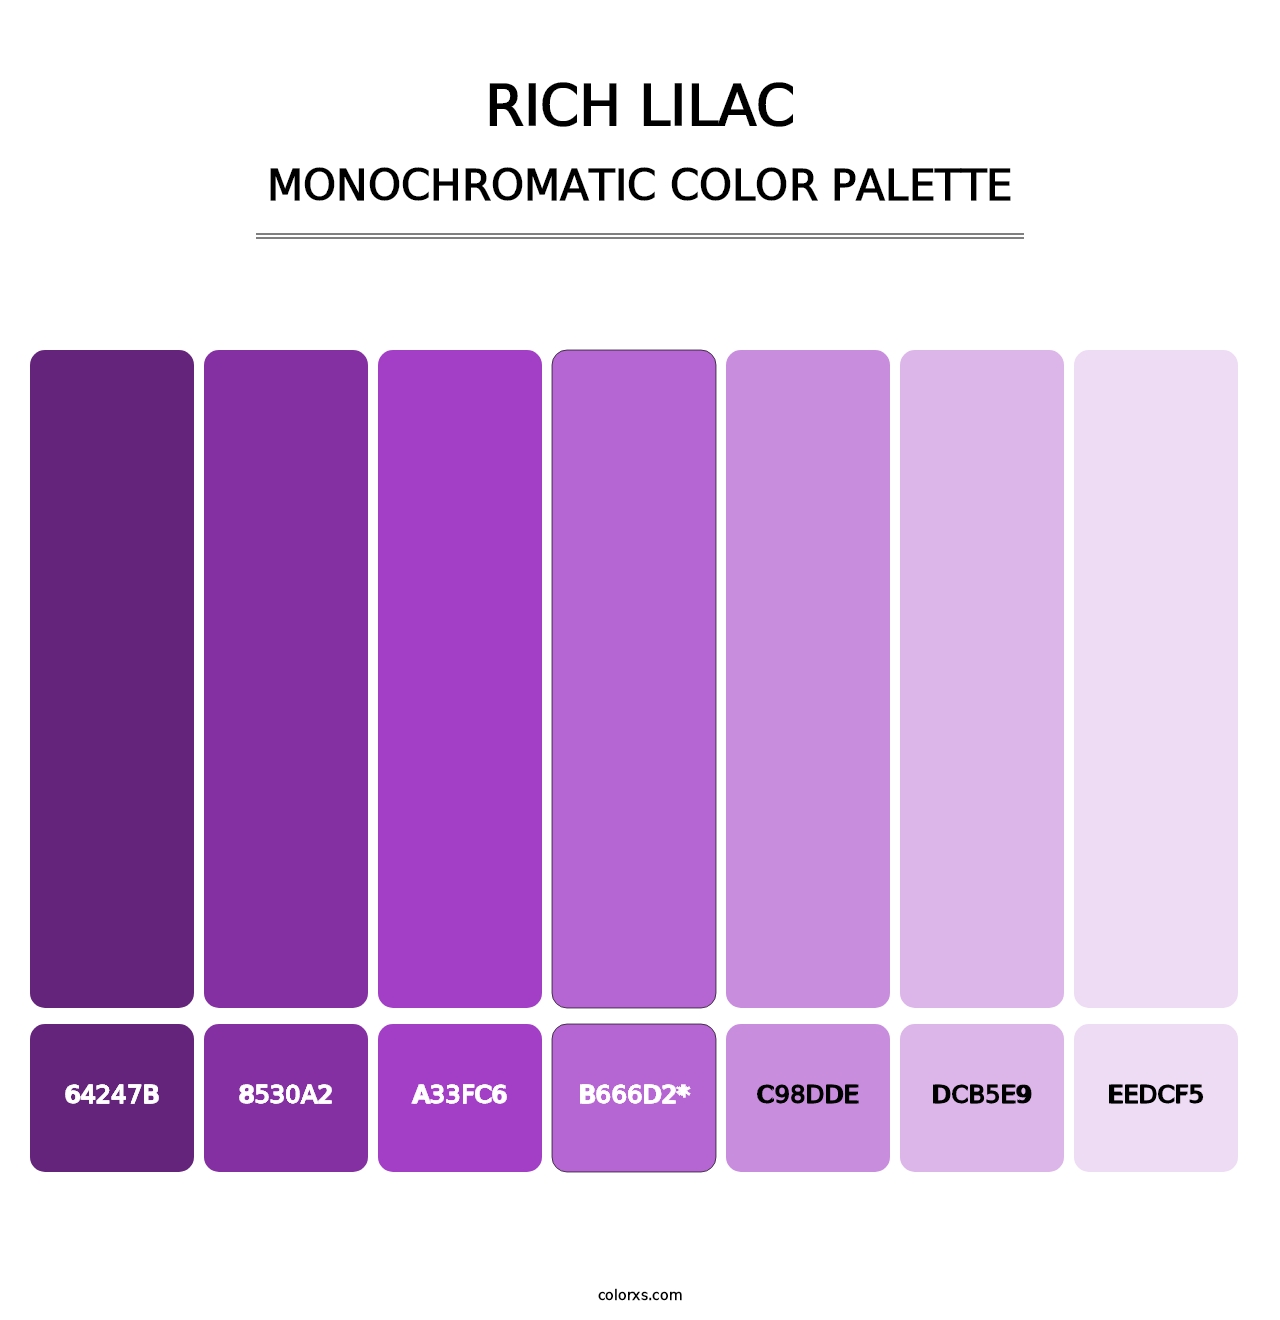 Rich Lilac - Monochromatic Color Palette